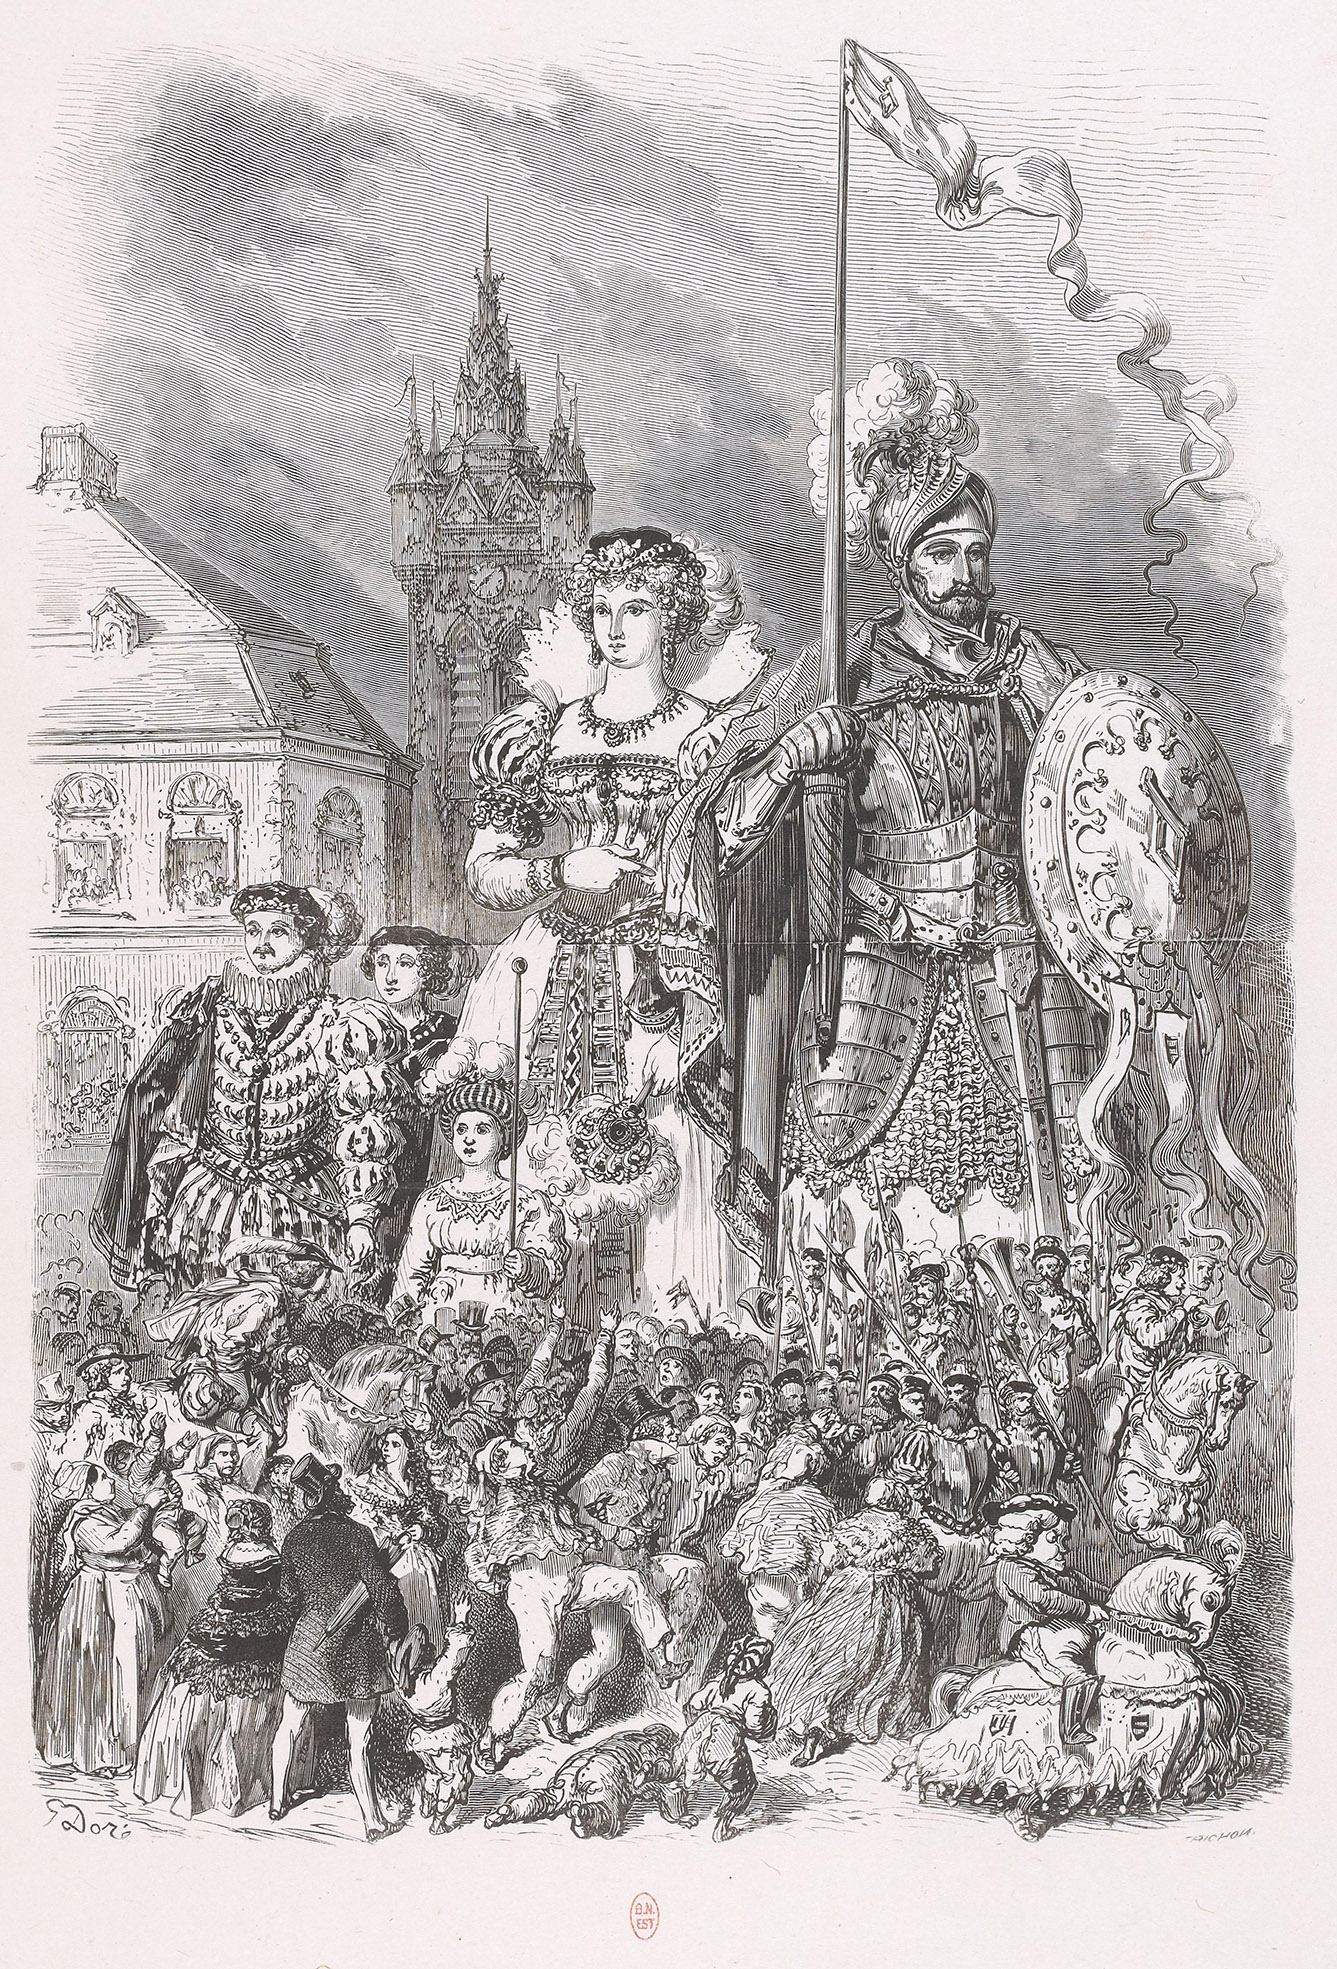 Planche gravée, fumé pour l'illustration de : "Le géant Gayant et sa famille" dans "Journal pour tous"]/ G. Doré ; Trichon - 1856 - Gallica, ark:/12148/btv1b10318762k